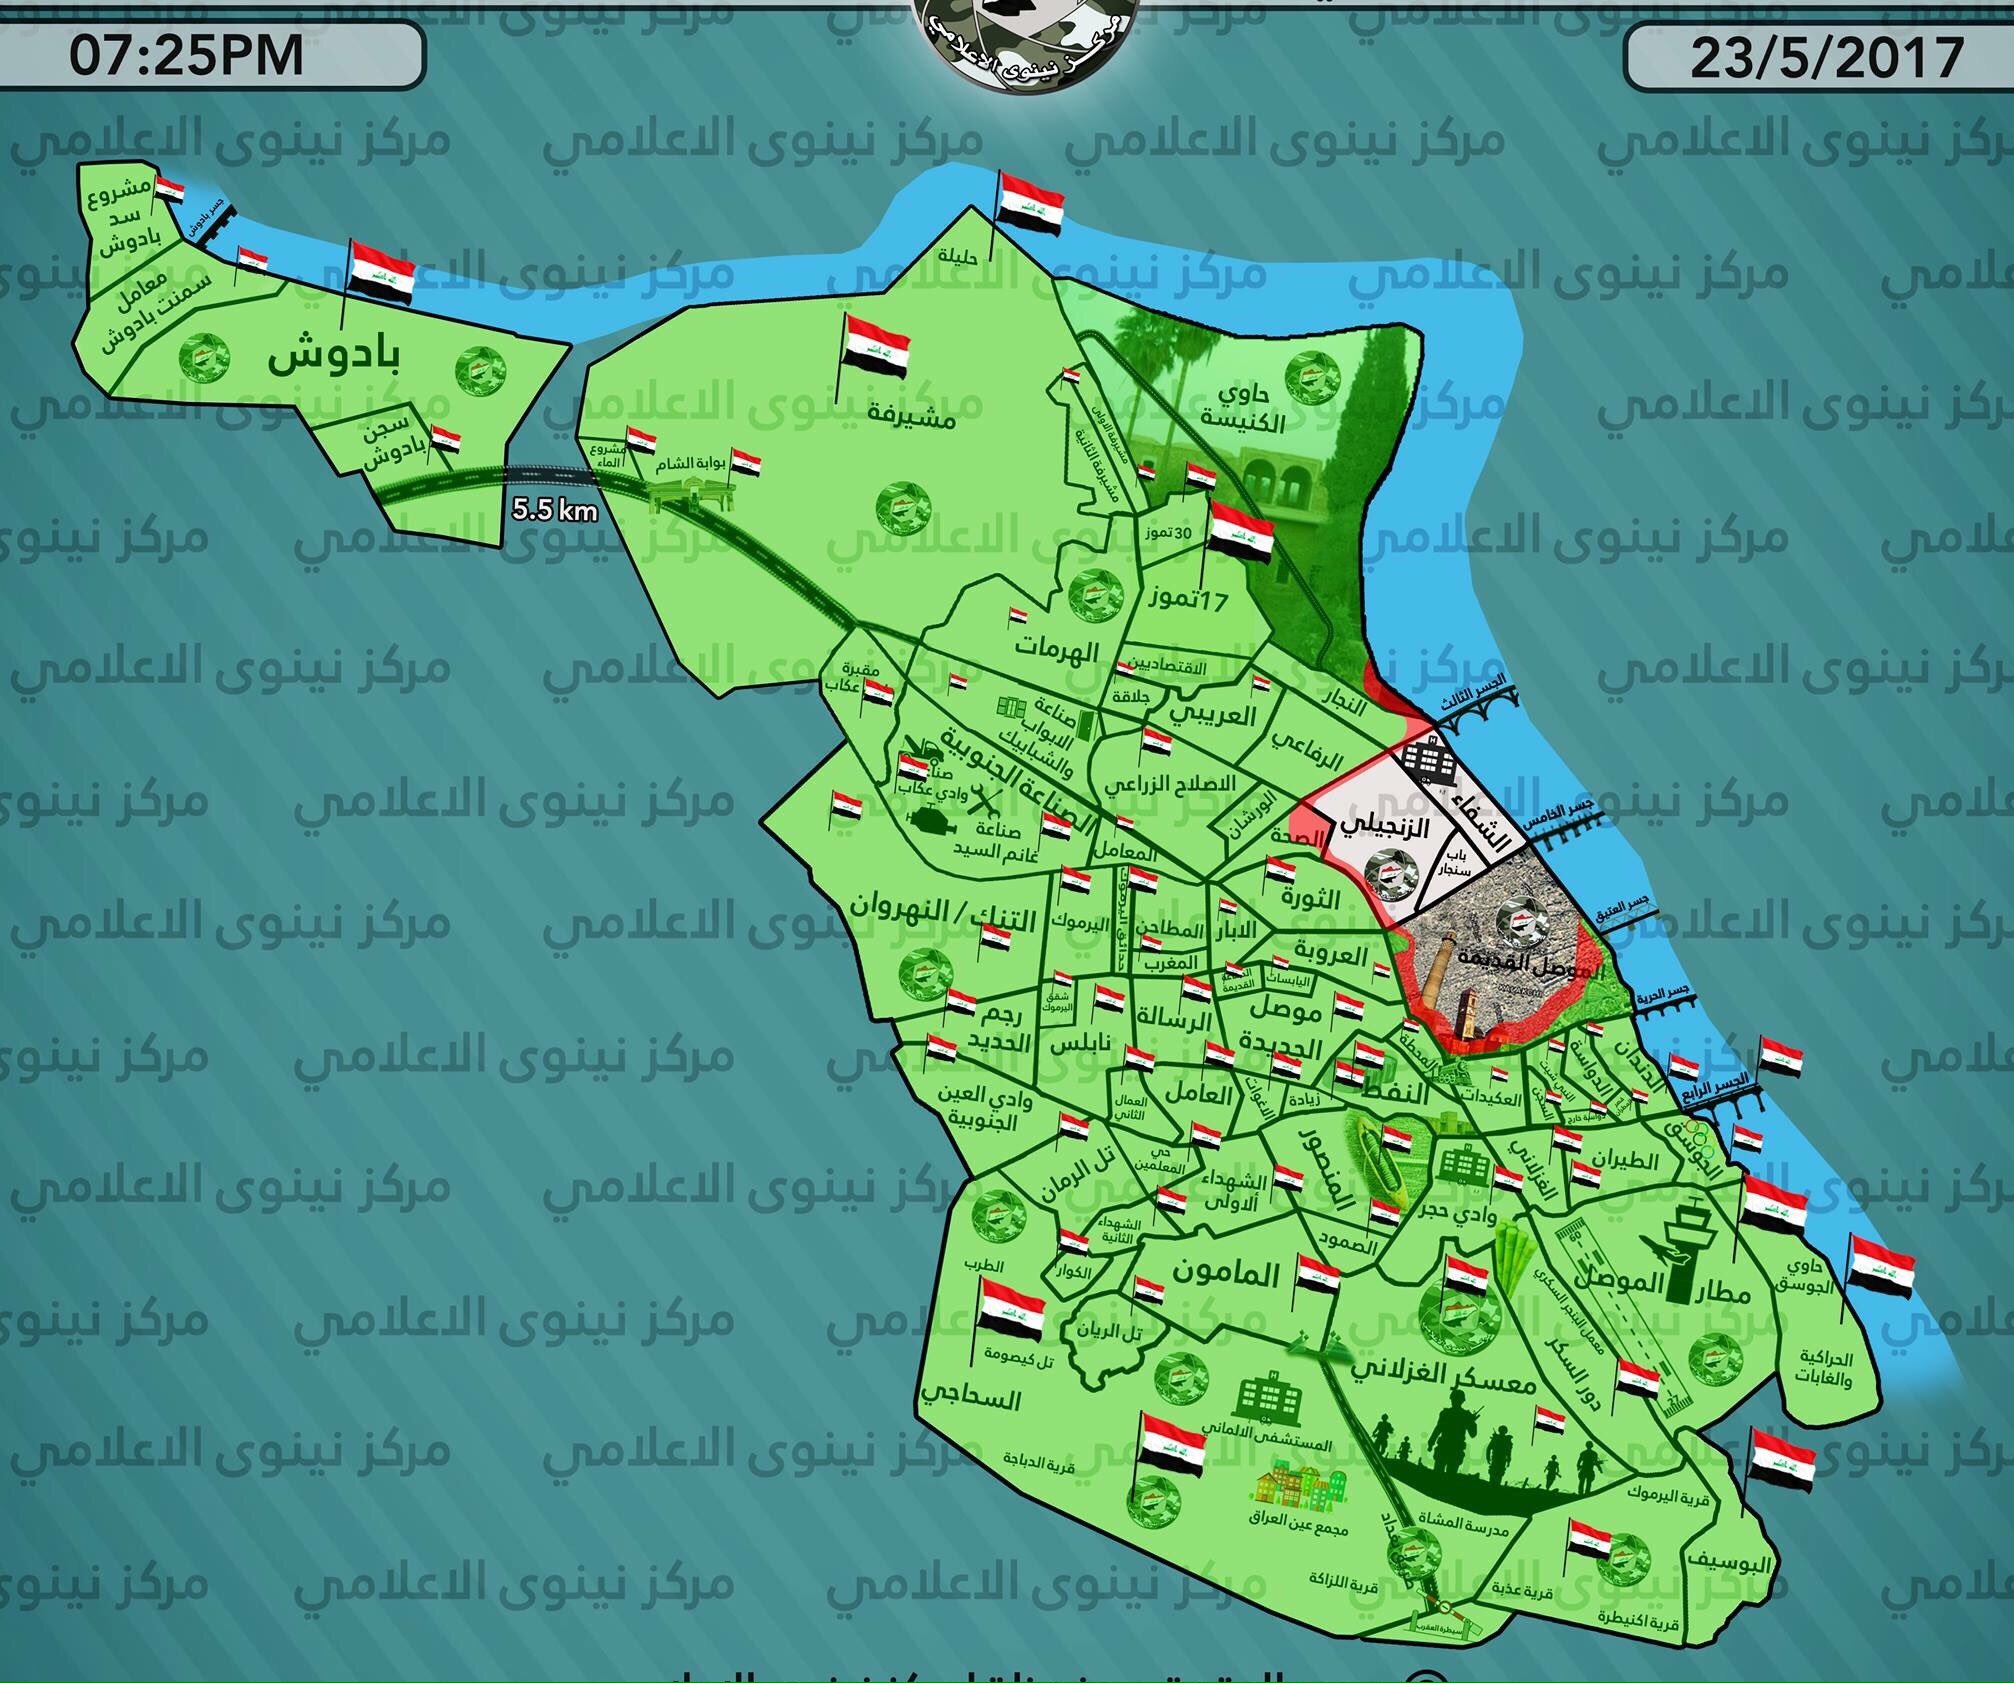 Zametki države KURDISTANA na teritoriju Sirije i Iraka? - Page 6 DAhy_0VWsAMiESb